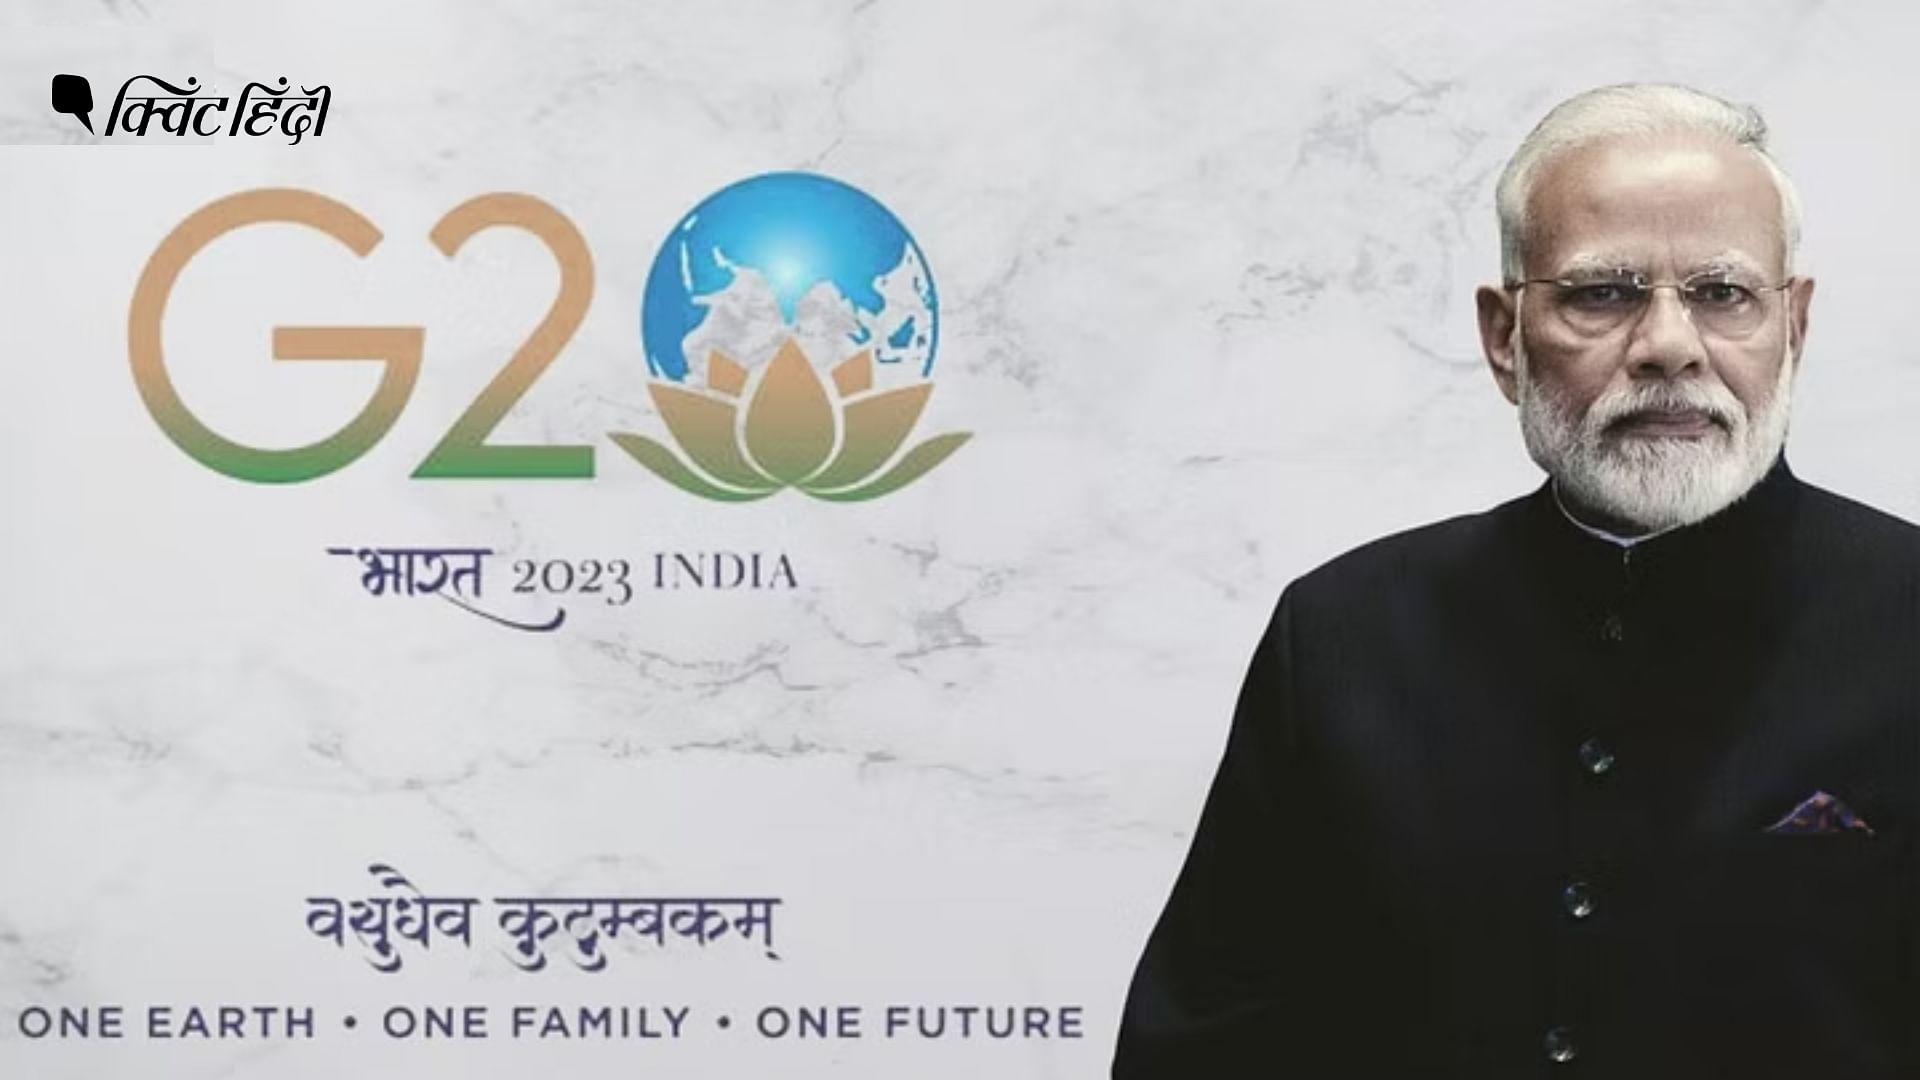 <div class="paragraphs"><p>भारत इस साल G20 शिखर सम्मेलन की अध्यक्षता कर रहा है&nbsp;</p></div>